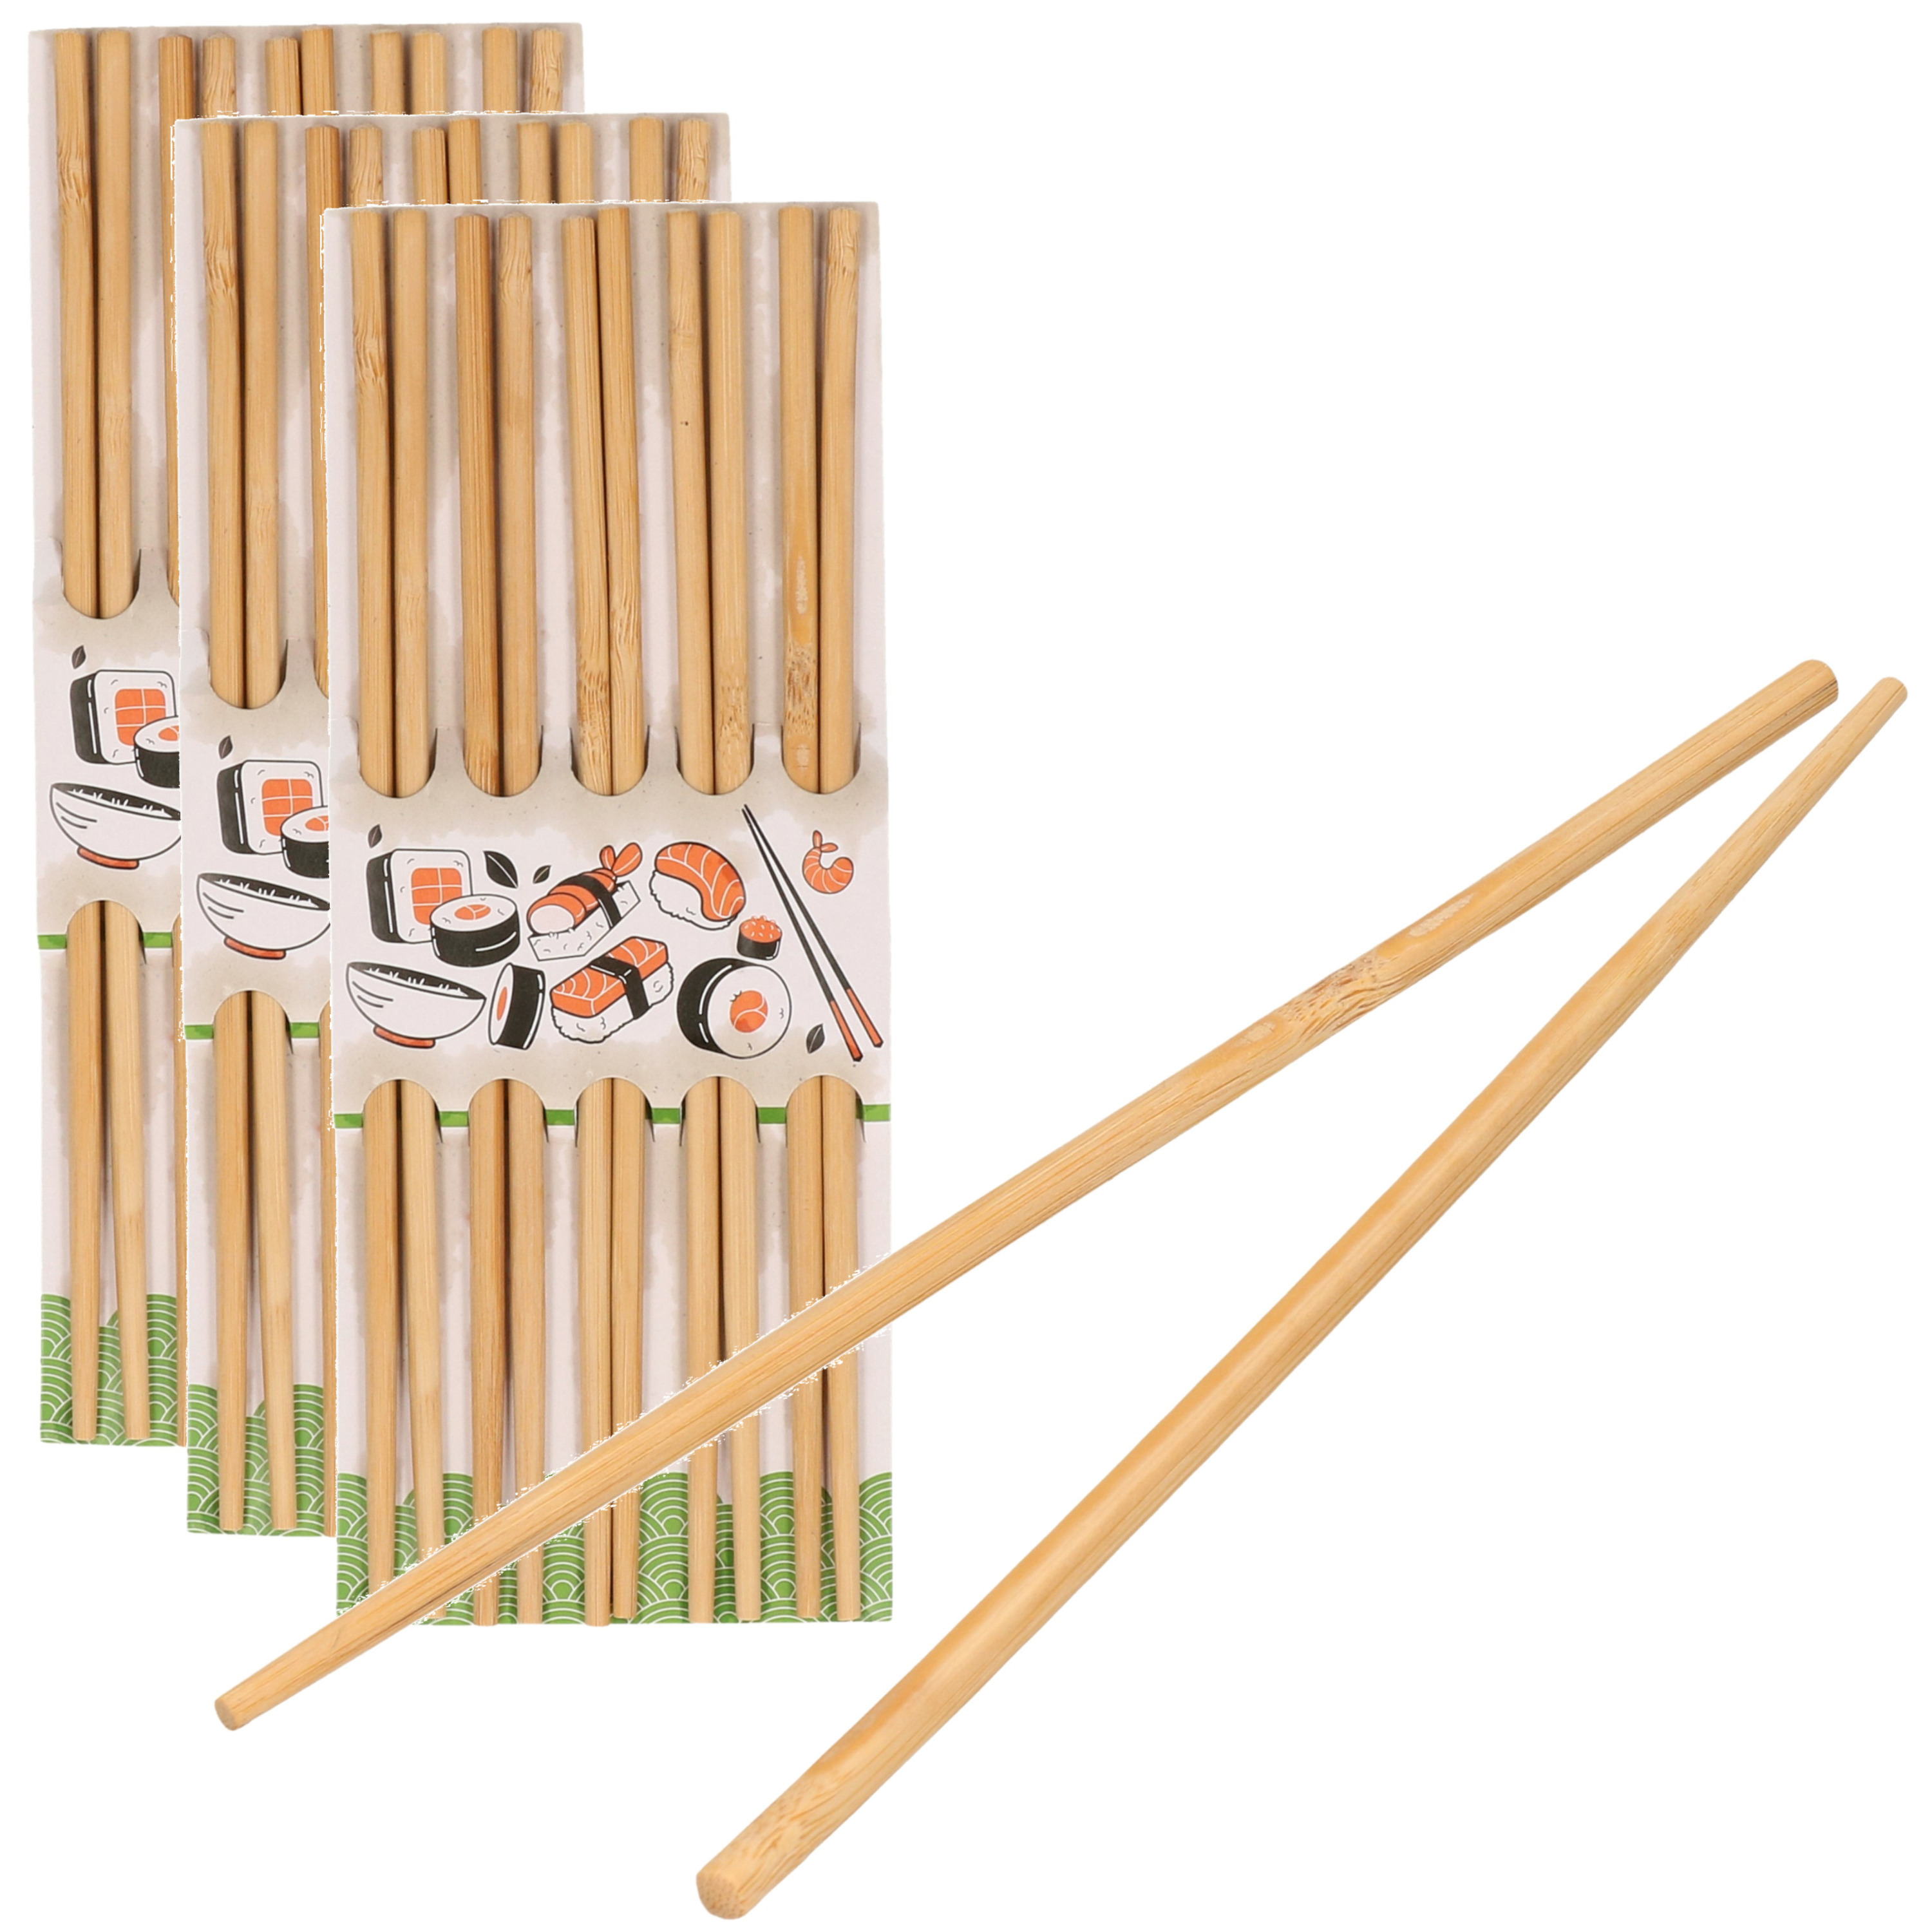 Sushi eetstokjes 30x setjes bamboe hout 24 cm